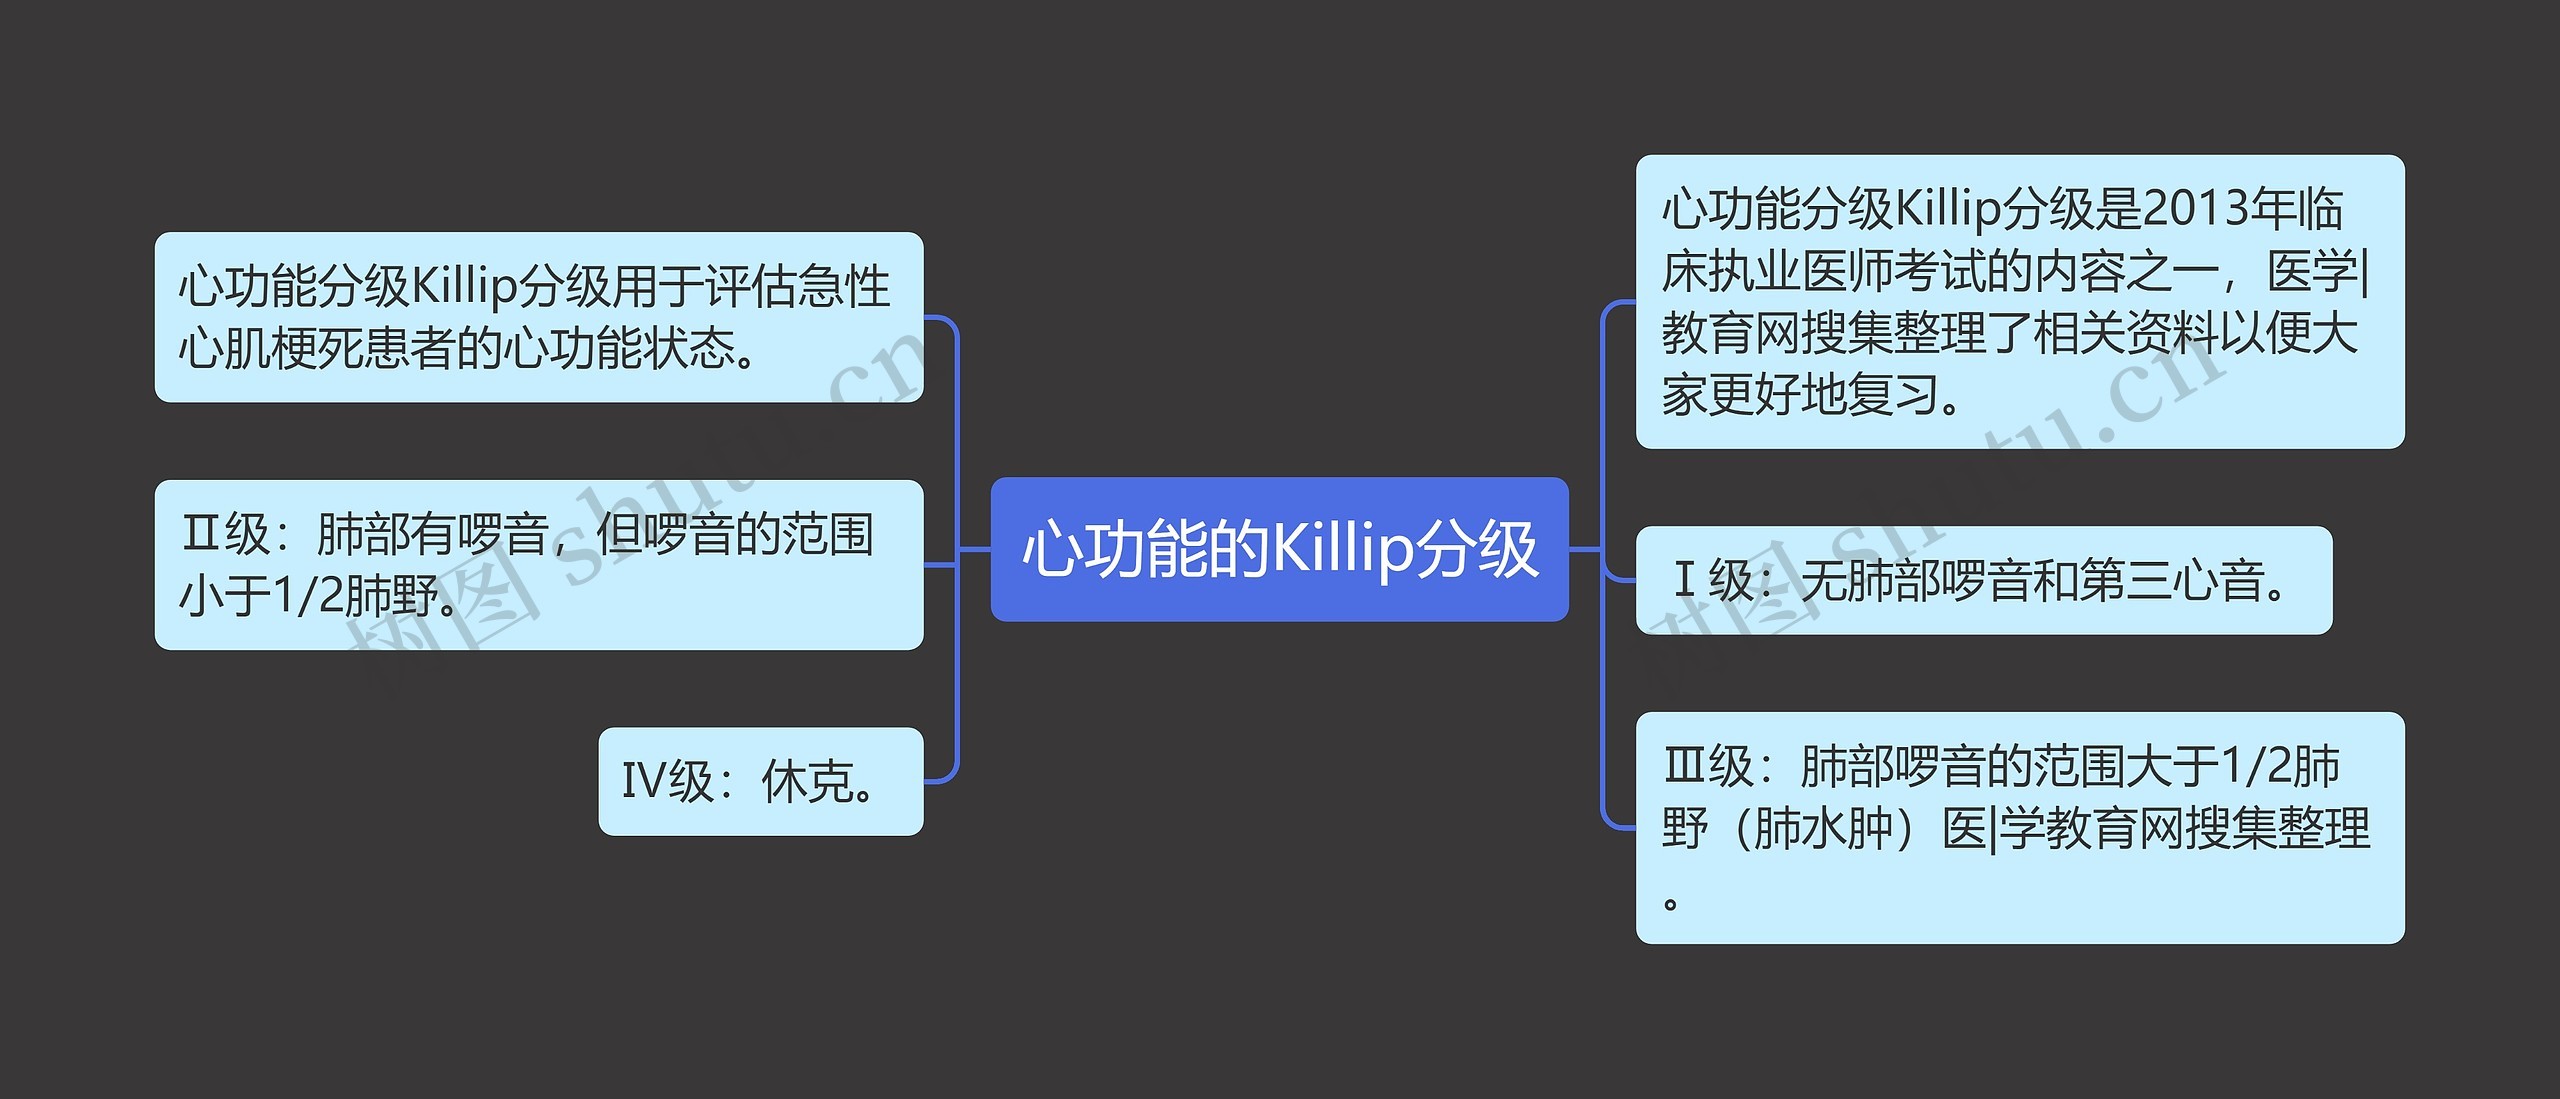 心功能的Killip分级思维导图